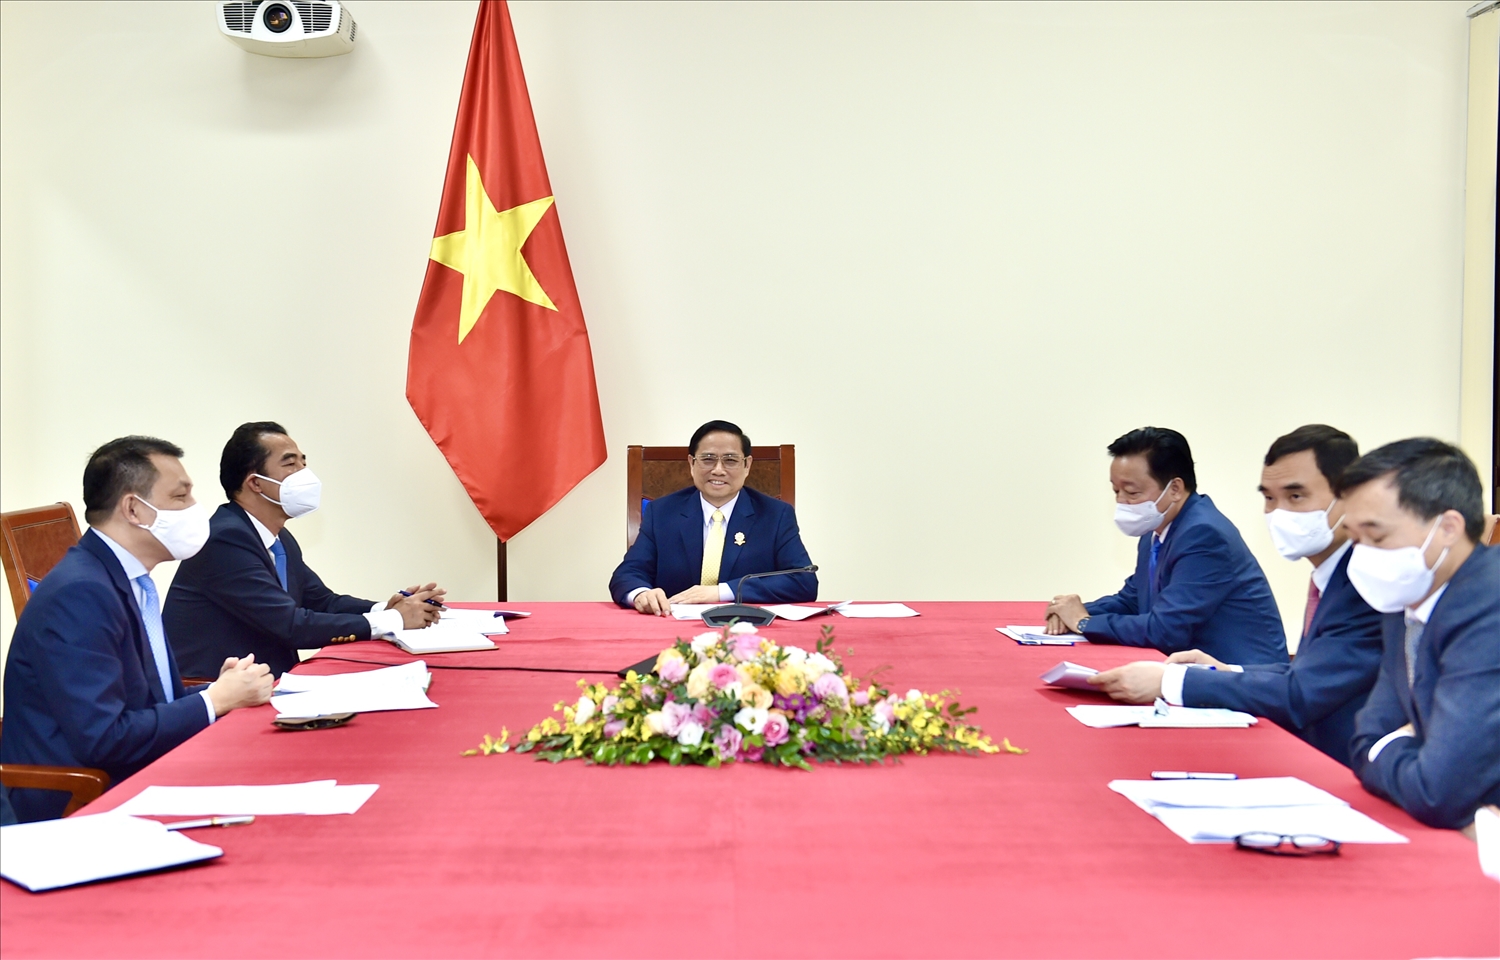 Trong không khí hữu nghị và cởi mở, hai Thủ tướng bày tỏ vui mừng về những bước phát triển mạnh mẽ của quan hệ Đối tác chiến lược Việt Nam-Anh thời gian gần đây. Ảnh: VGP/Nhật Bắc